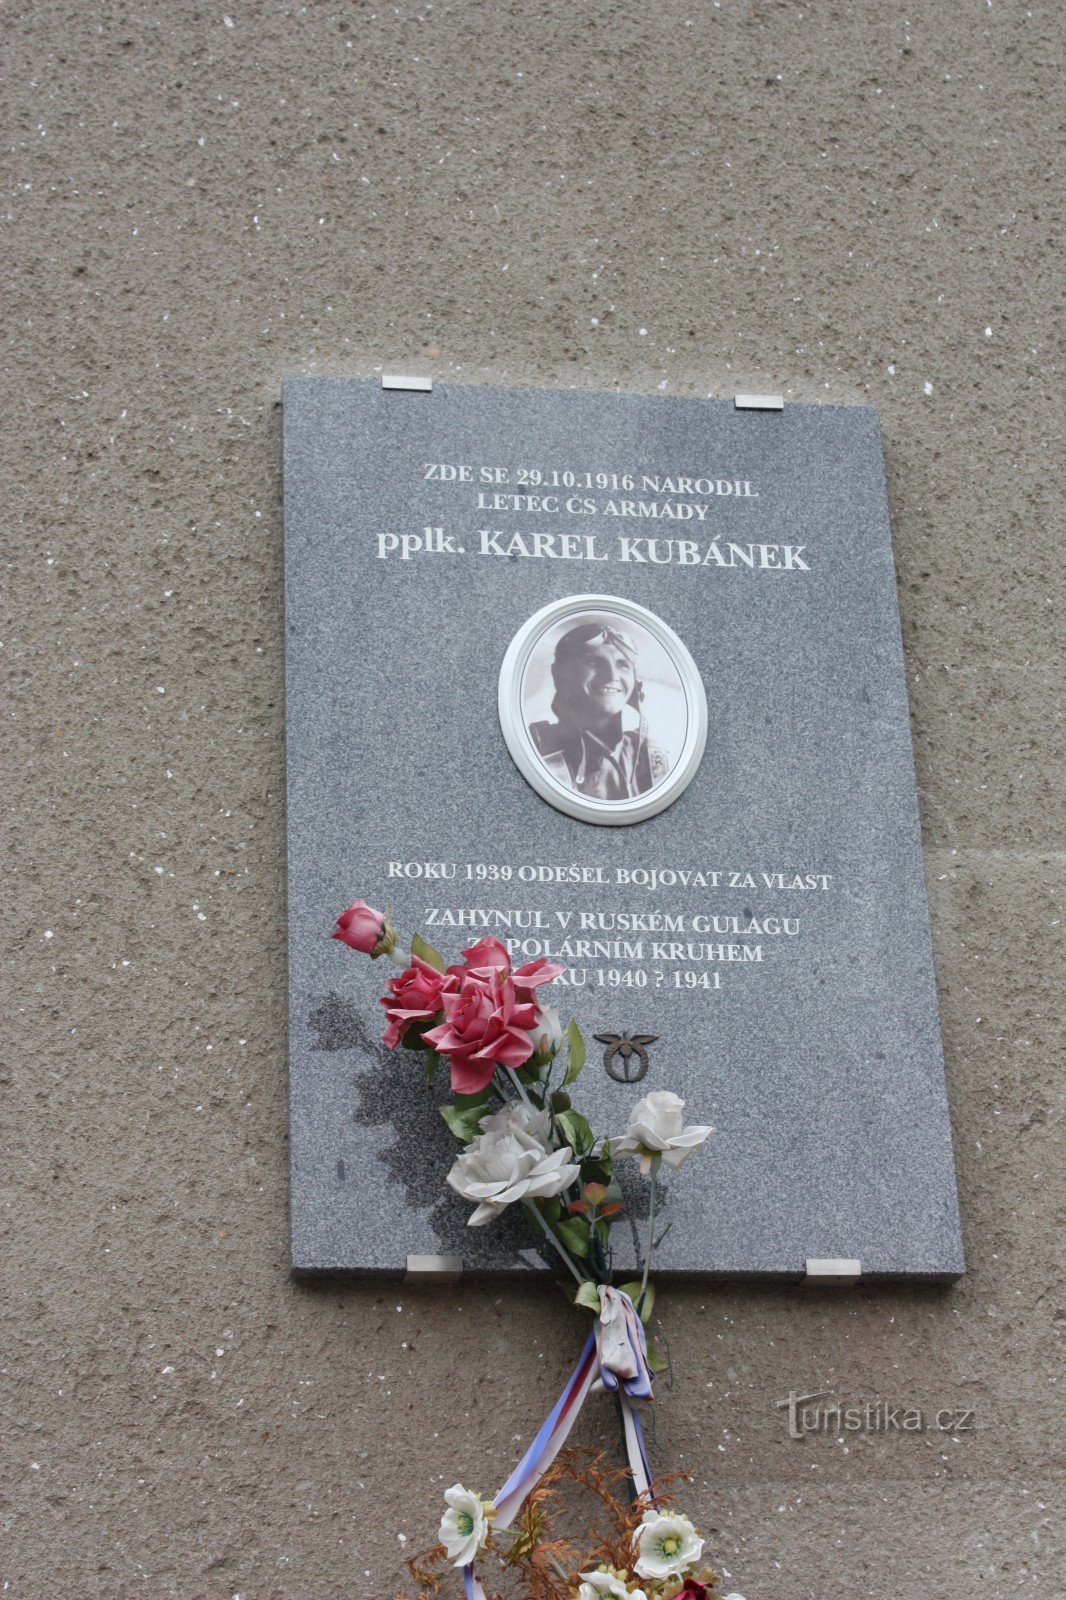 Меморіальна дошка на розі Zvědavá ulička в Jilemnice